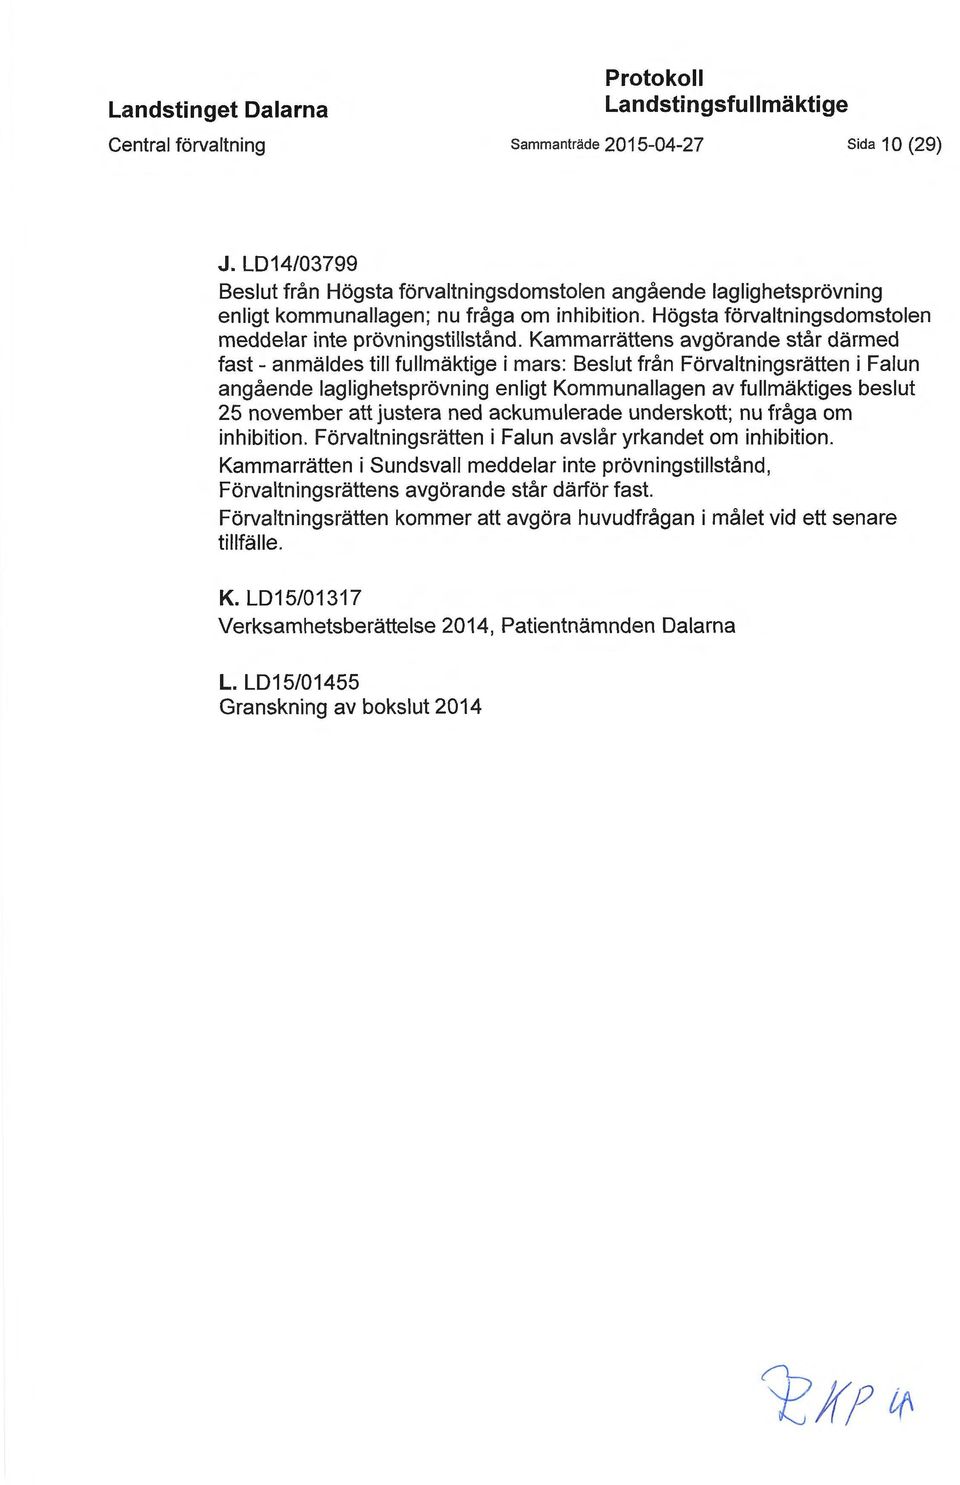 Kammarrättens avgörande står därmed fast - anmäldes till fullmäktige i mars: Beslut från Förvaltningsrätten i Falun angående laglighetsprövning enligt Kommunallagen av fullmäktiges beslut 25 november